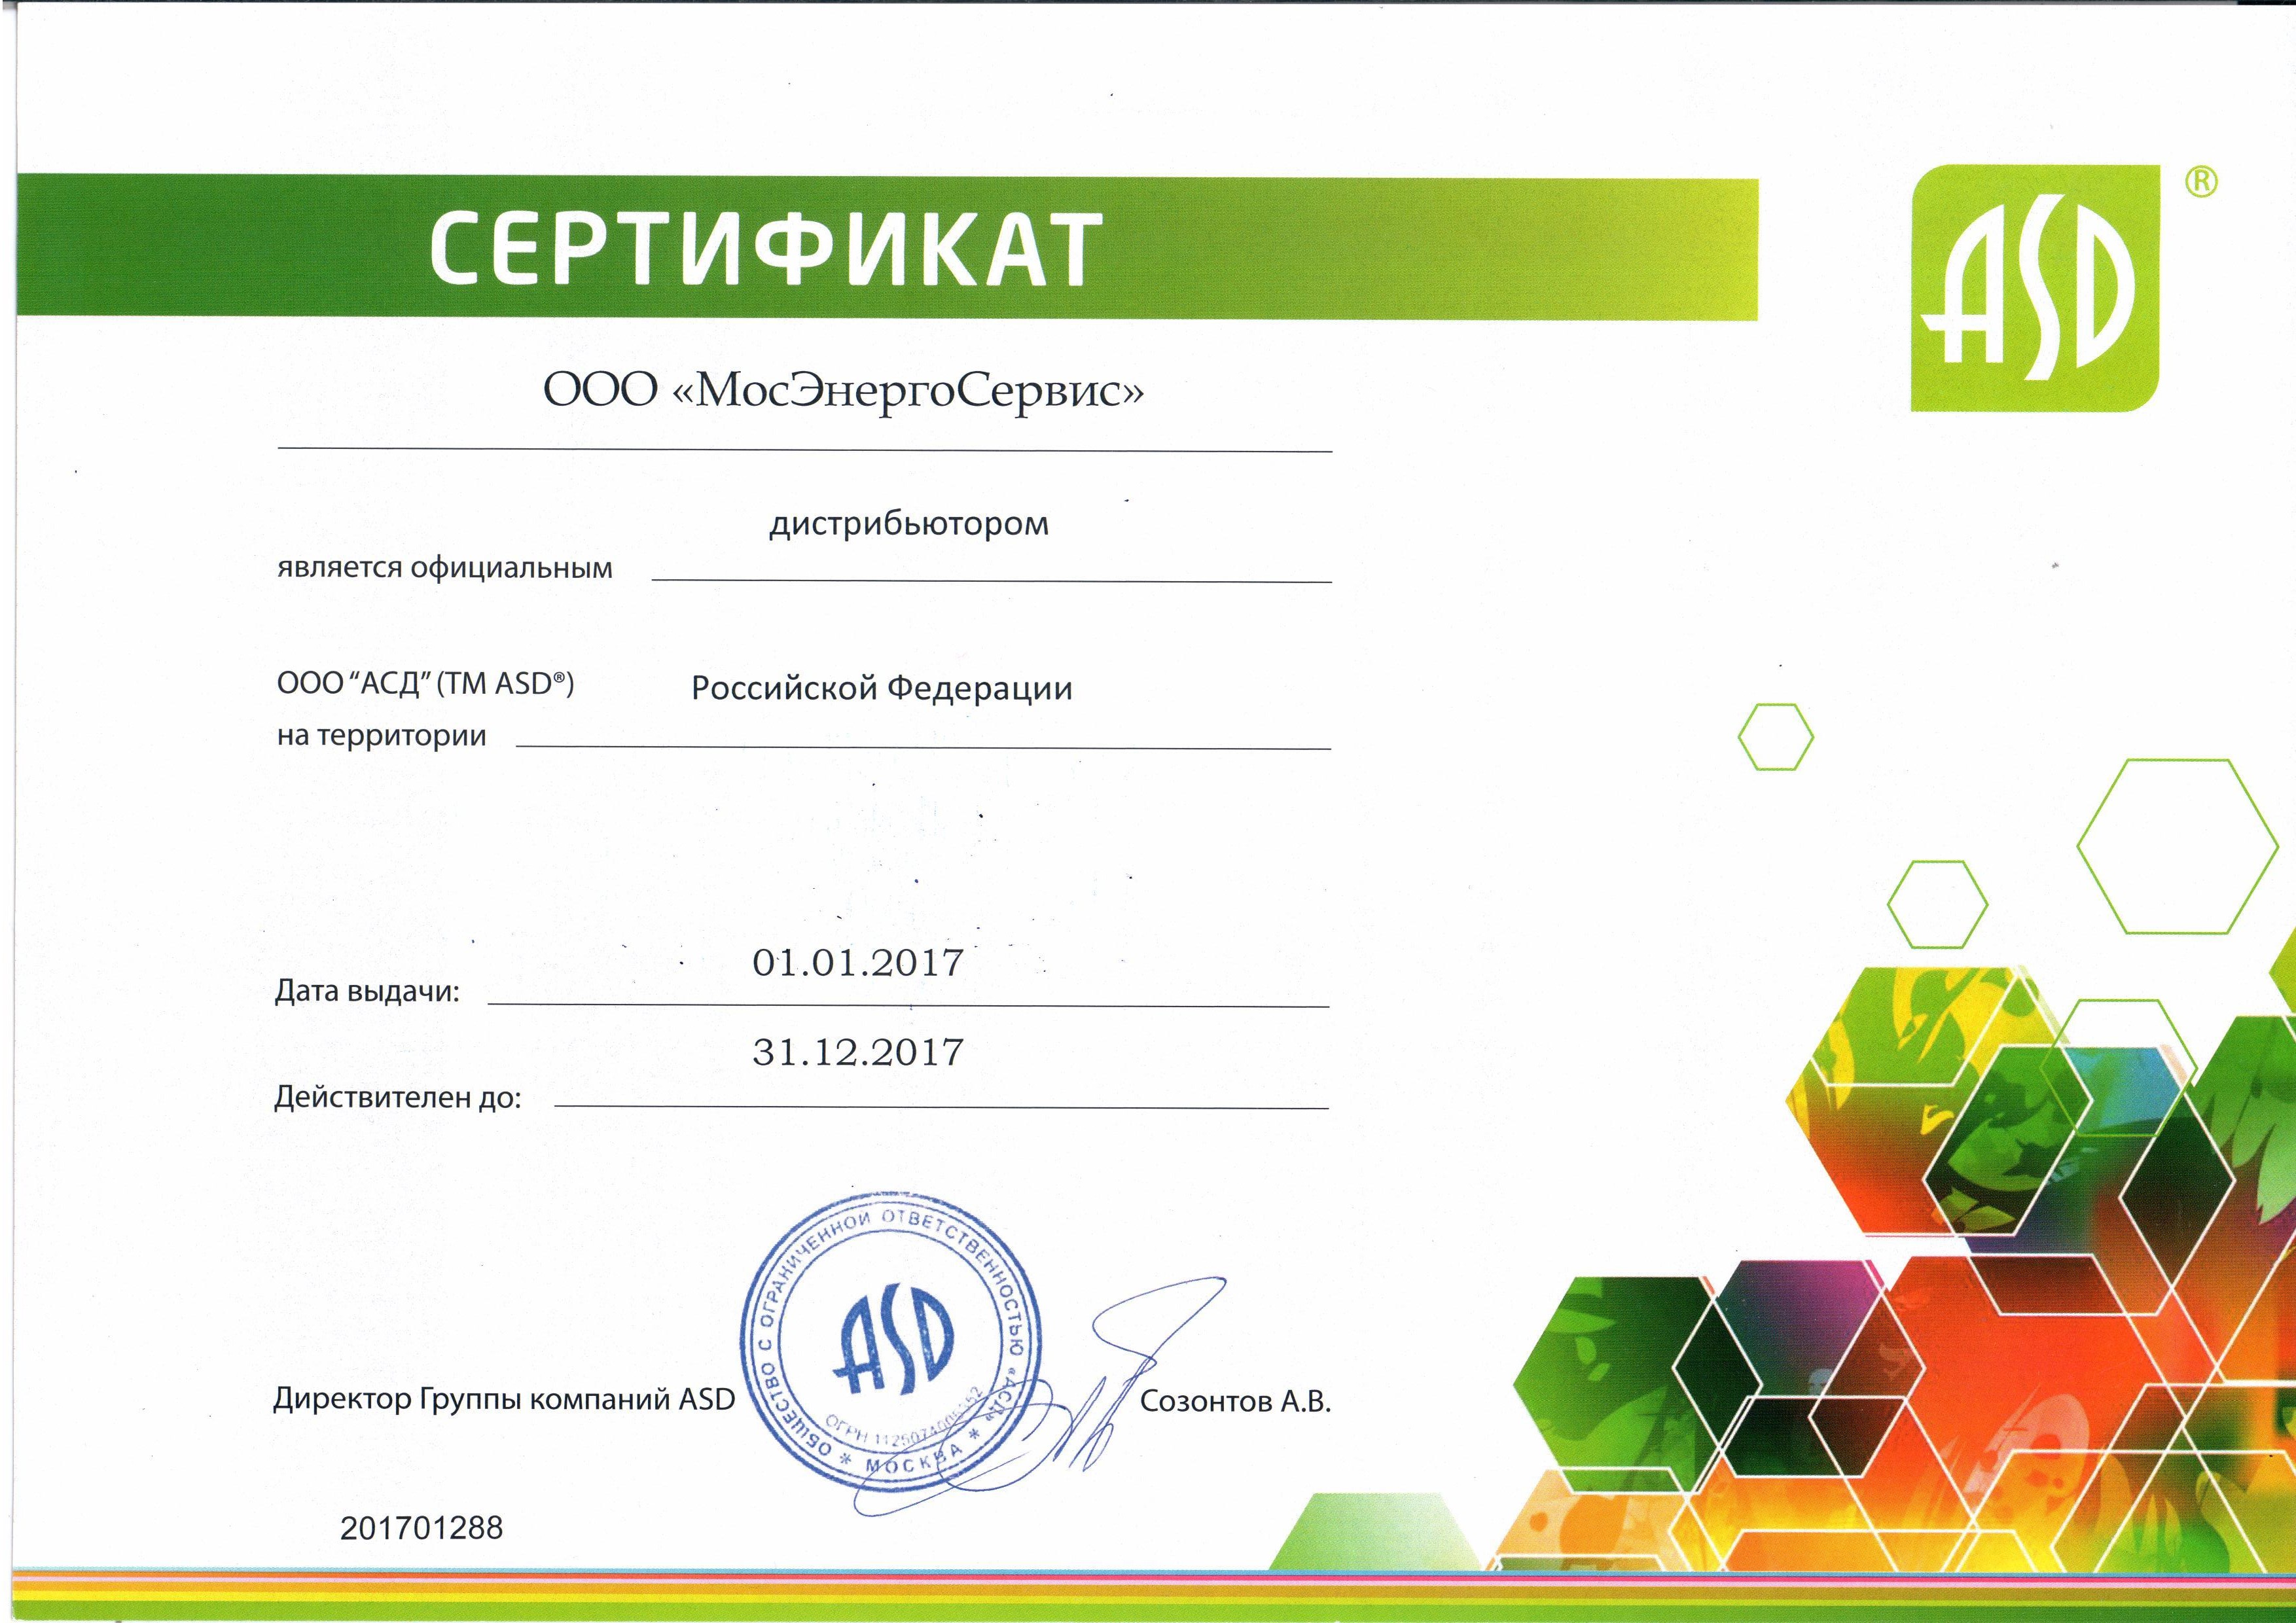 Сертификат АСД 2017